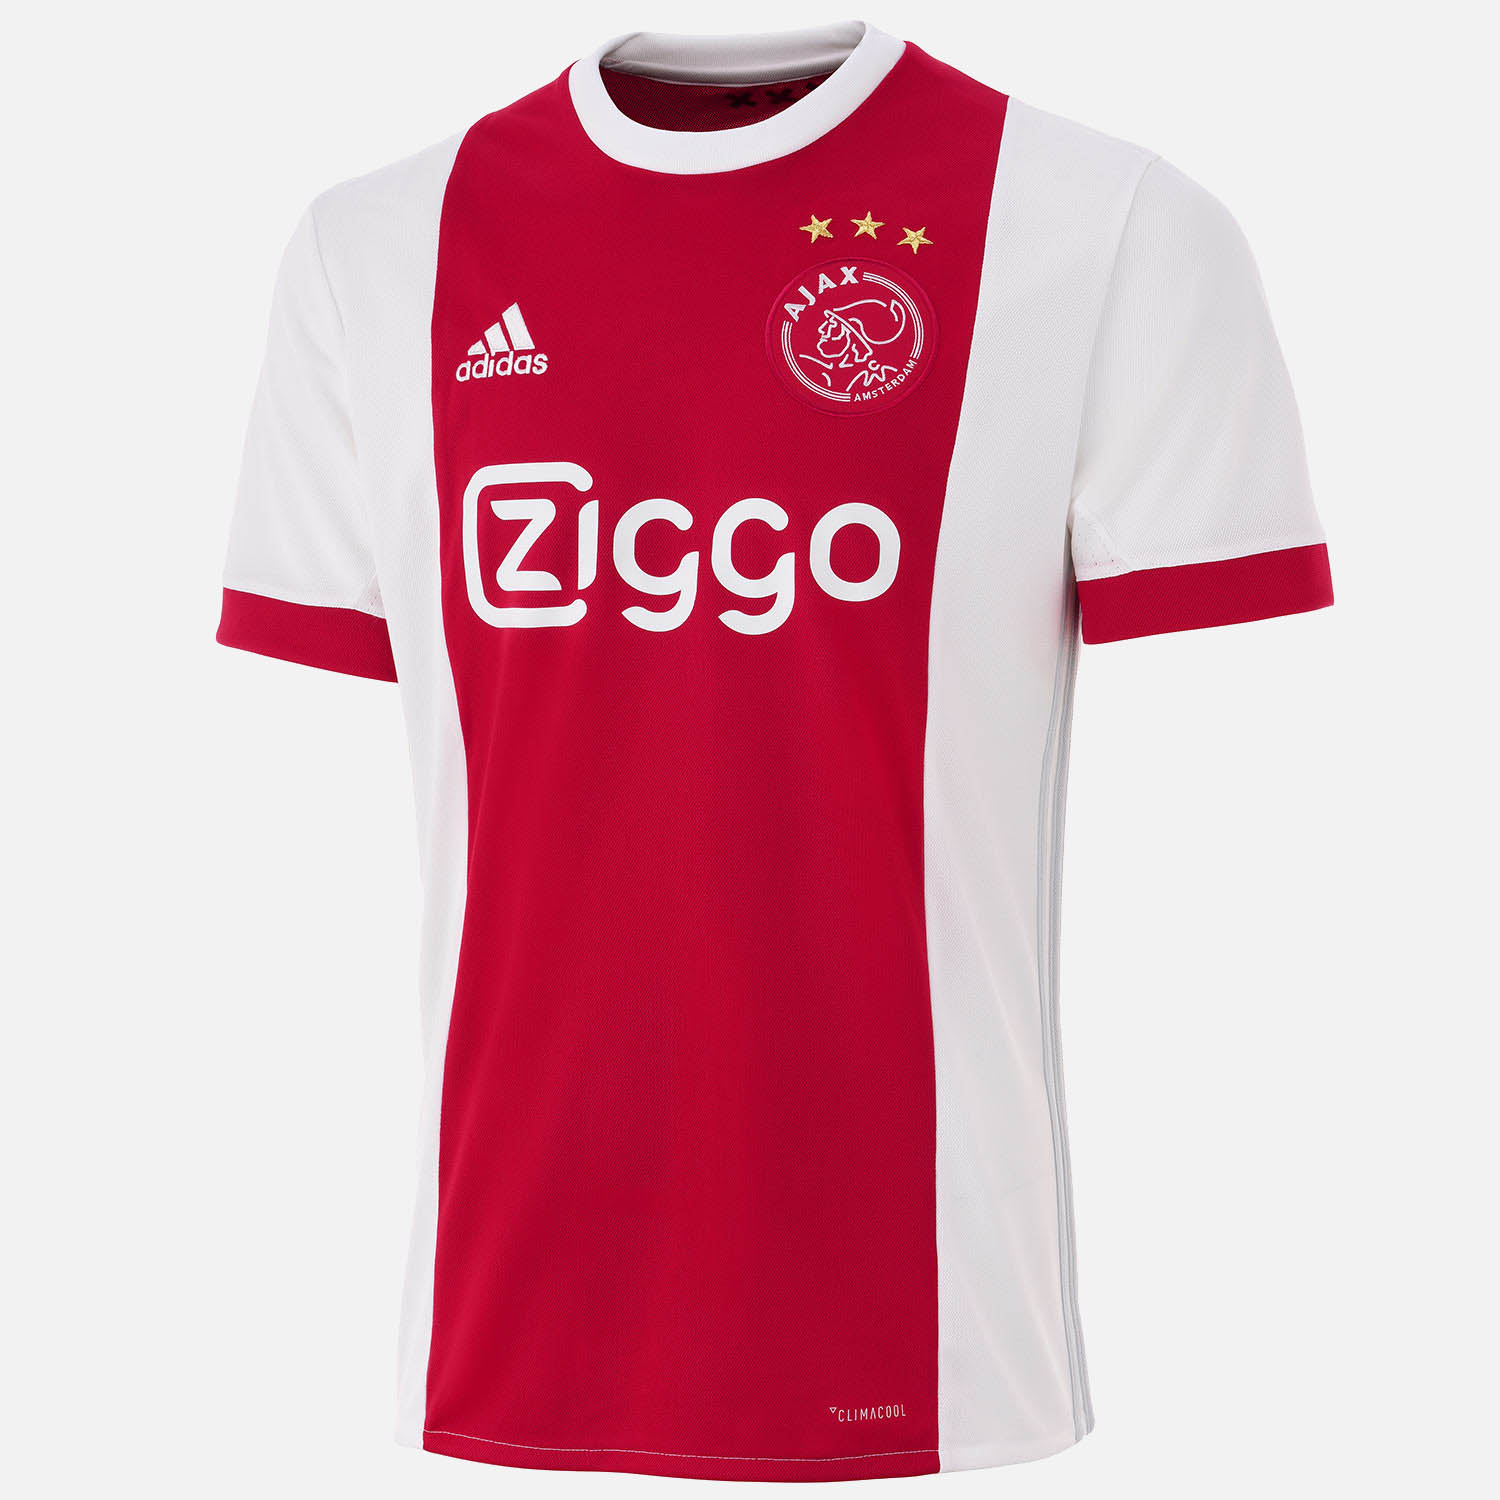 El uniforme de local del Ajax con la característico diseño ...